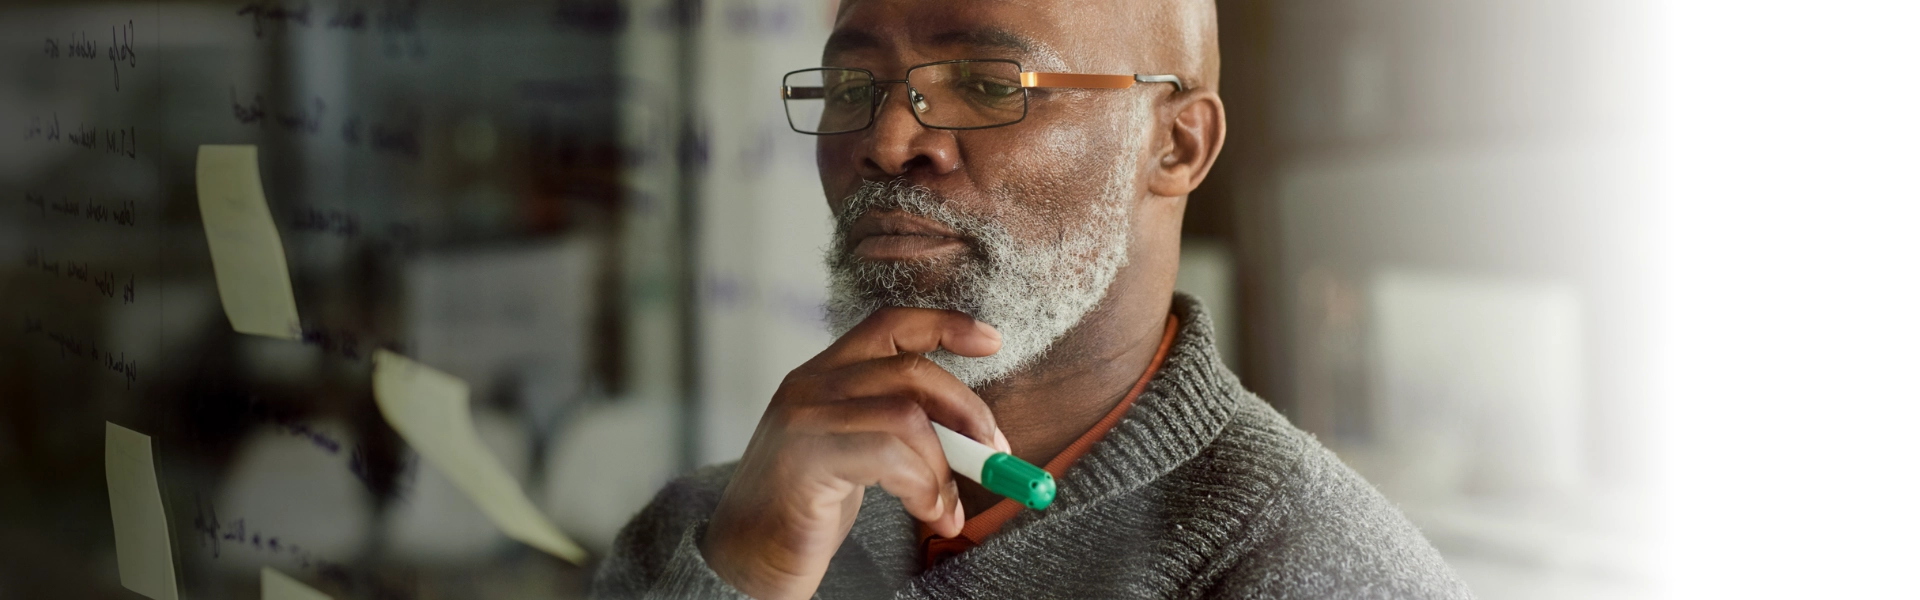 Homem negro com barba grisalha pensa sobre correr riscos segurando a caneta na mão direita. "